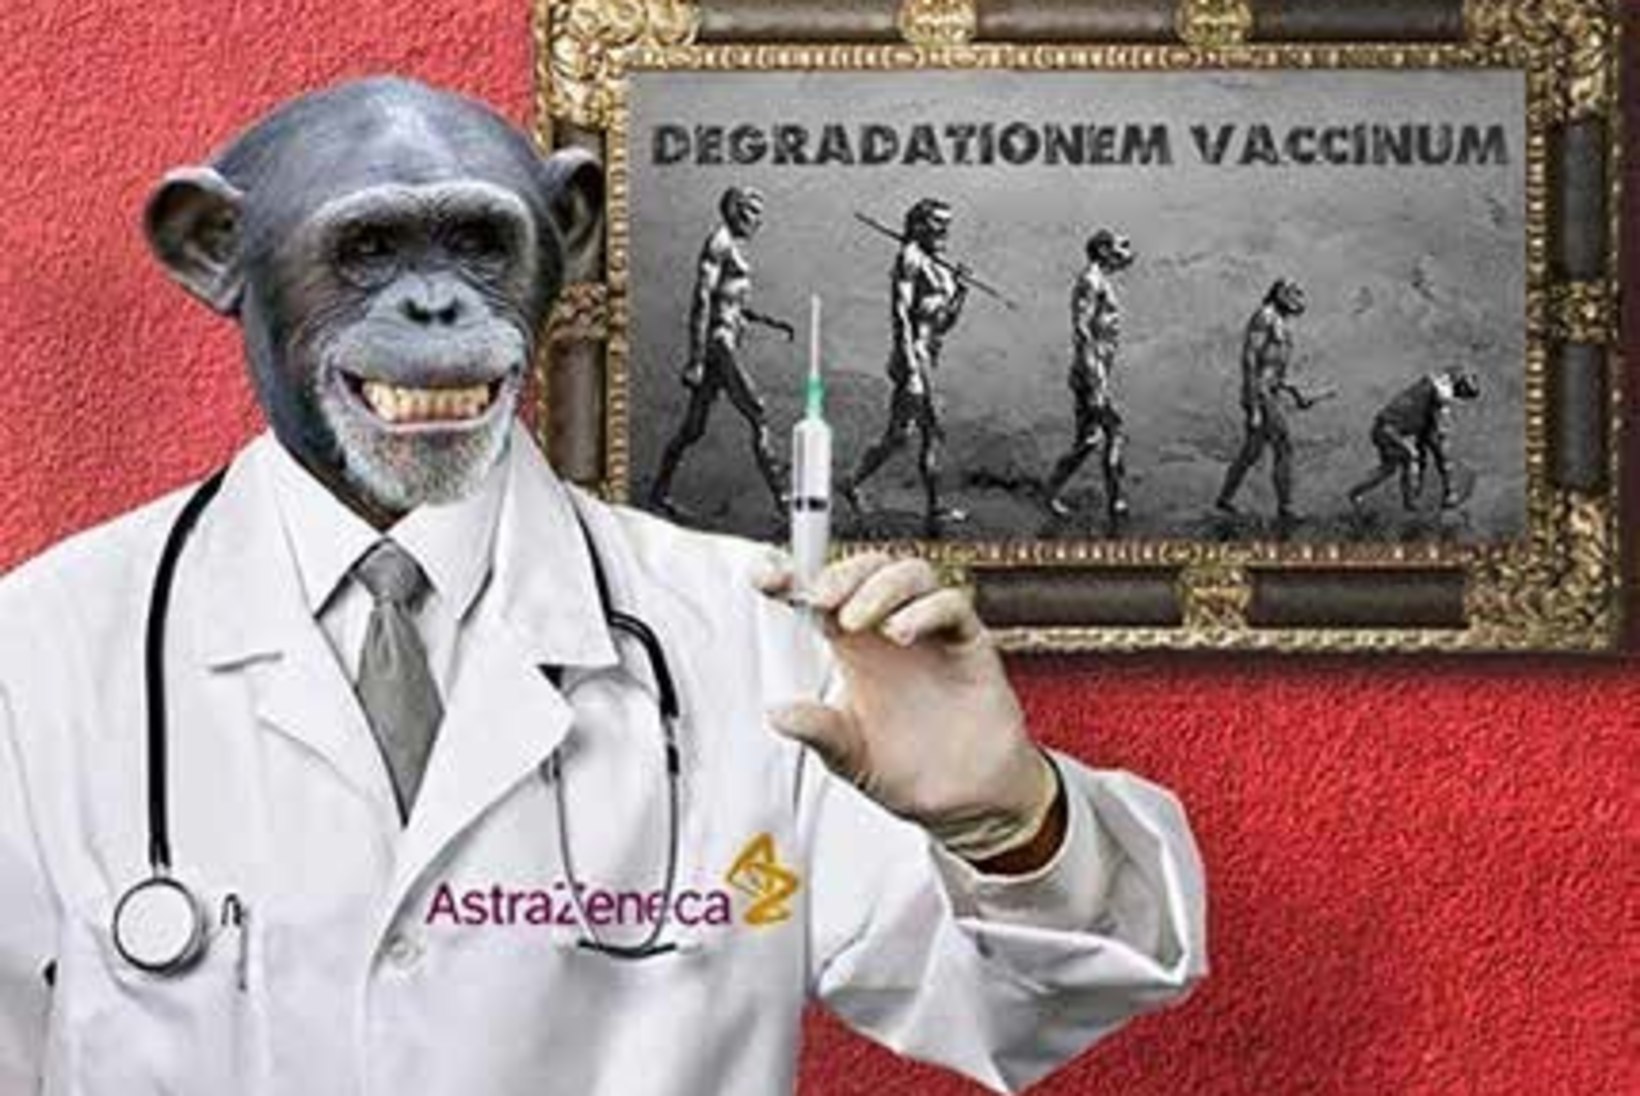 AJAJOON | Kuidas hävines eestlaste usaldus AstraZeneca koroonavaktsiini vastu?